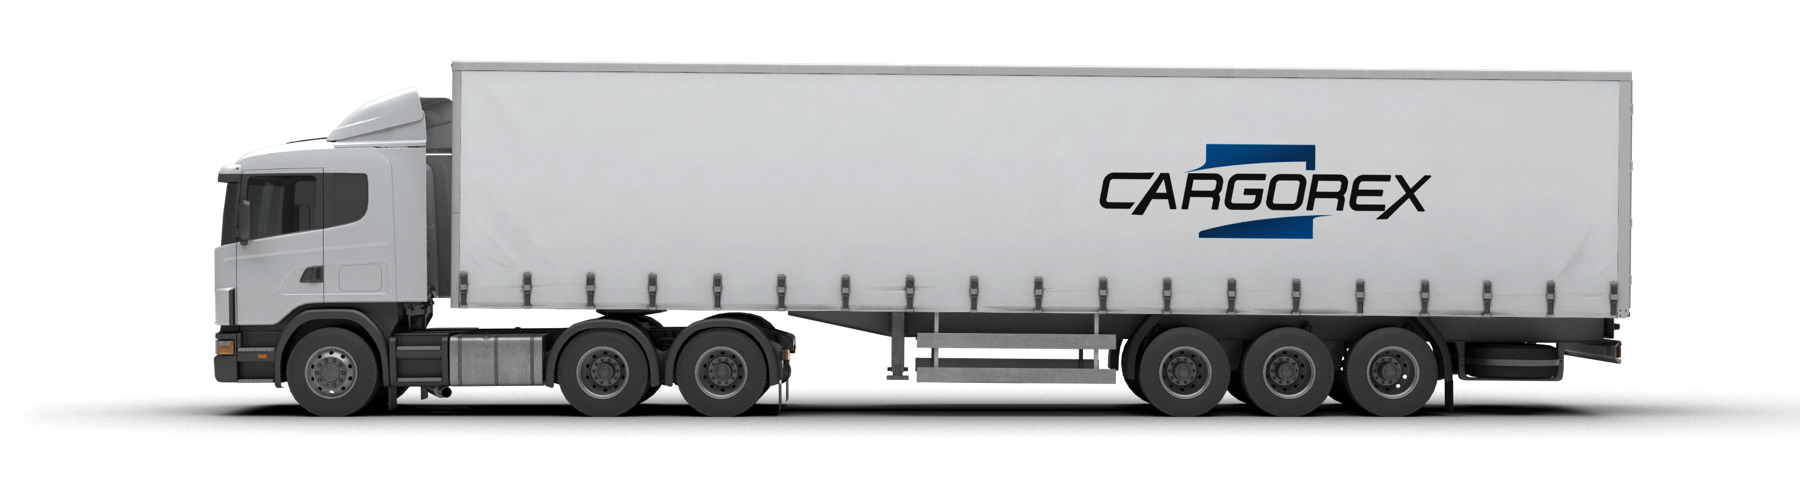 Cargorexpsd online - Devon Freight Services